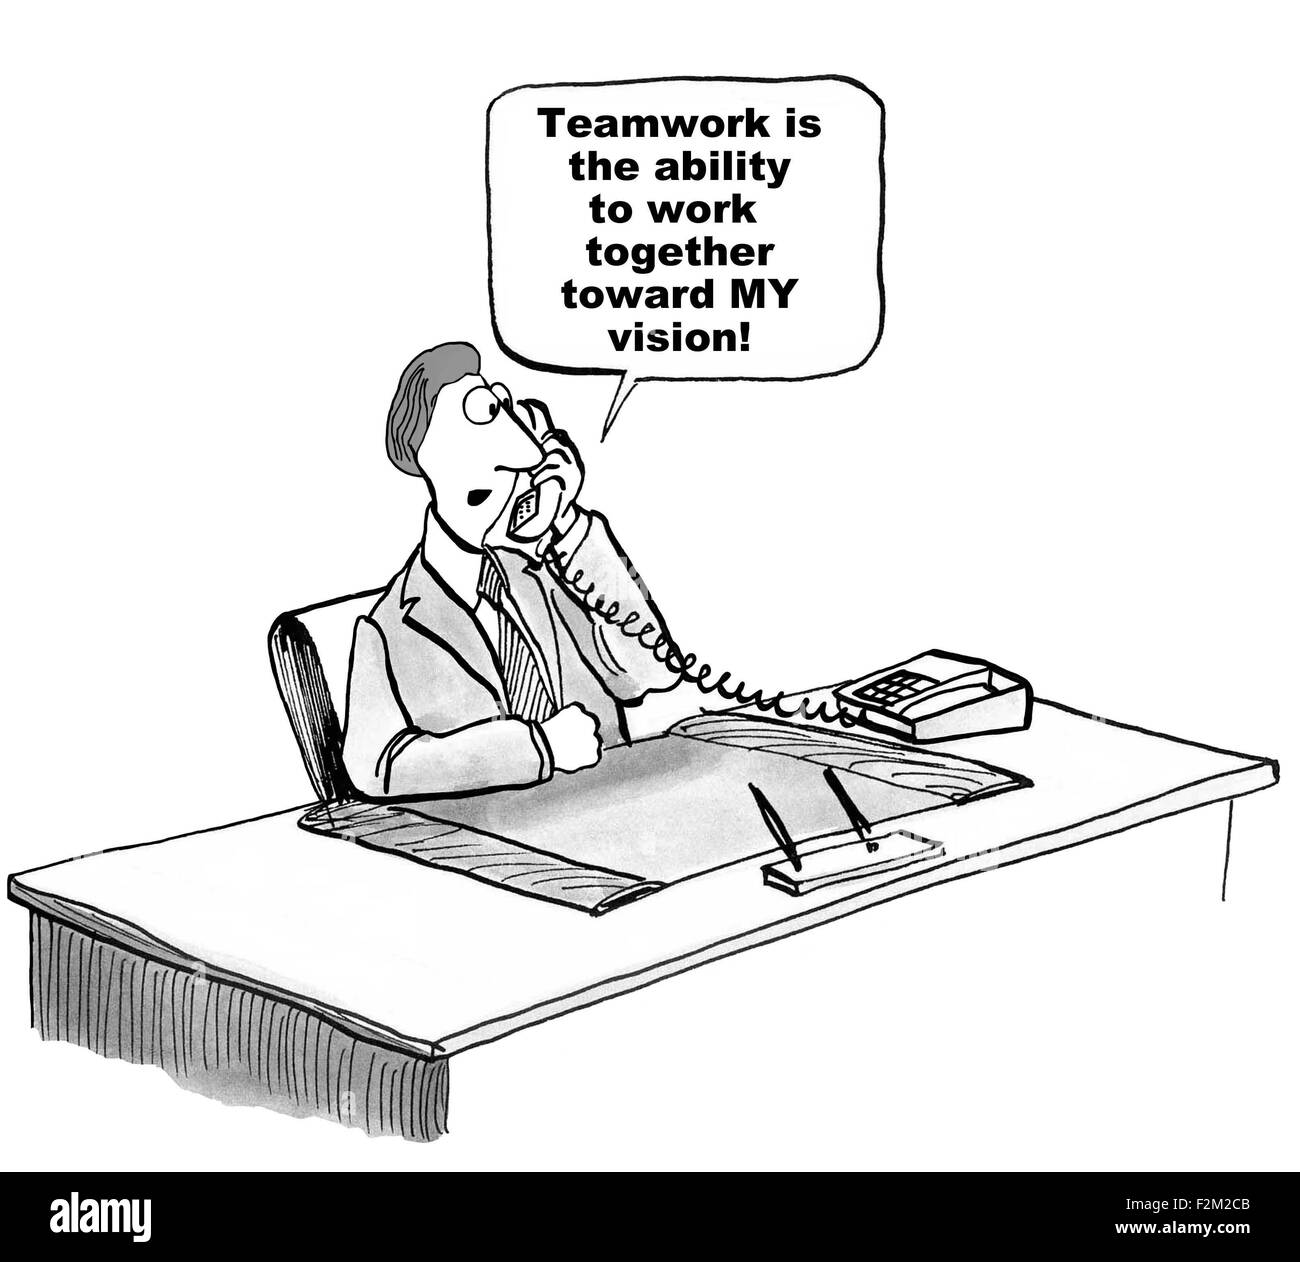 Business-Cartoon der Manager sagte: "Teamwork ist die Fähigkeit, meine Vision zusammenarbeiten". Stockfoto